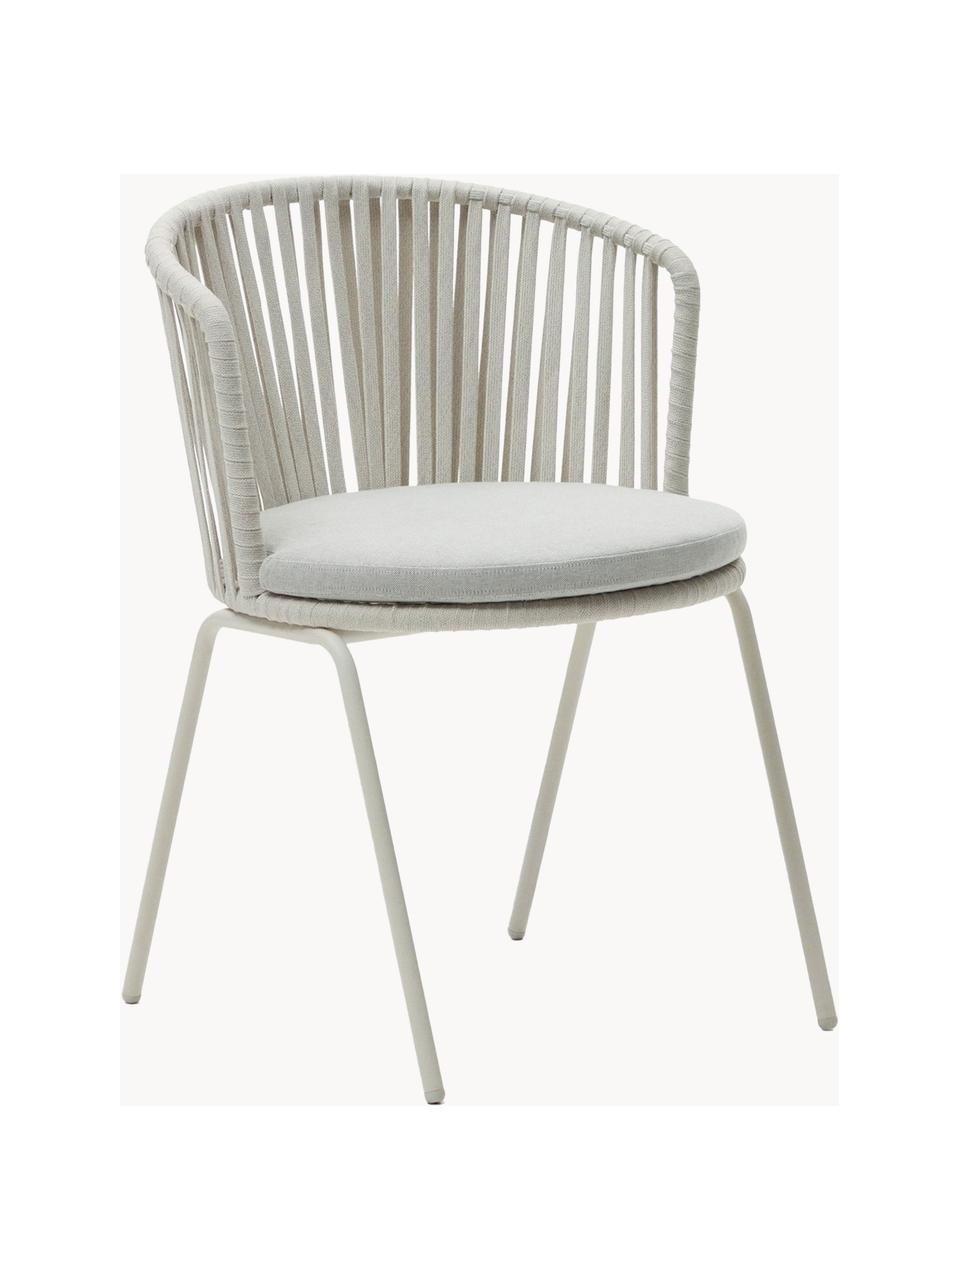 Zahradní židle s područkami Saconca, Světle šedá, světle béžová, Š 59 cm, H 56 cm